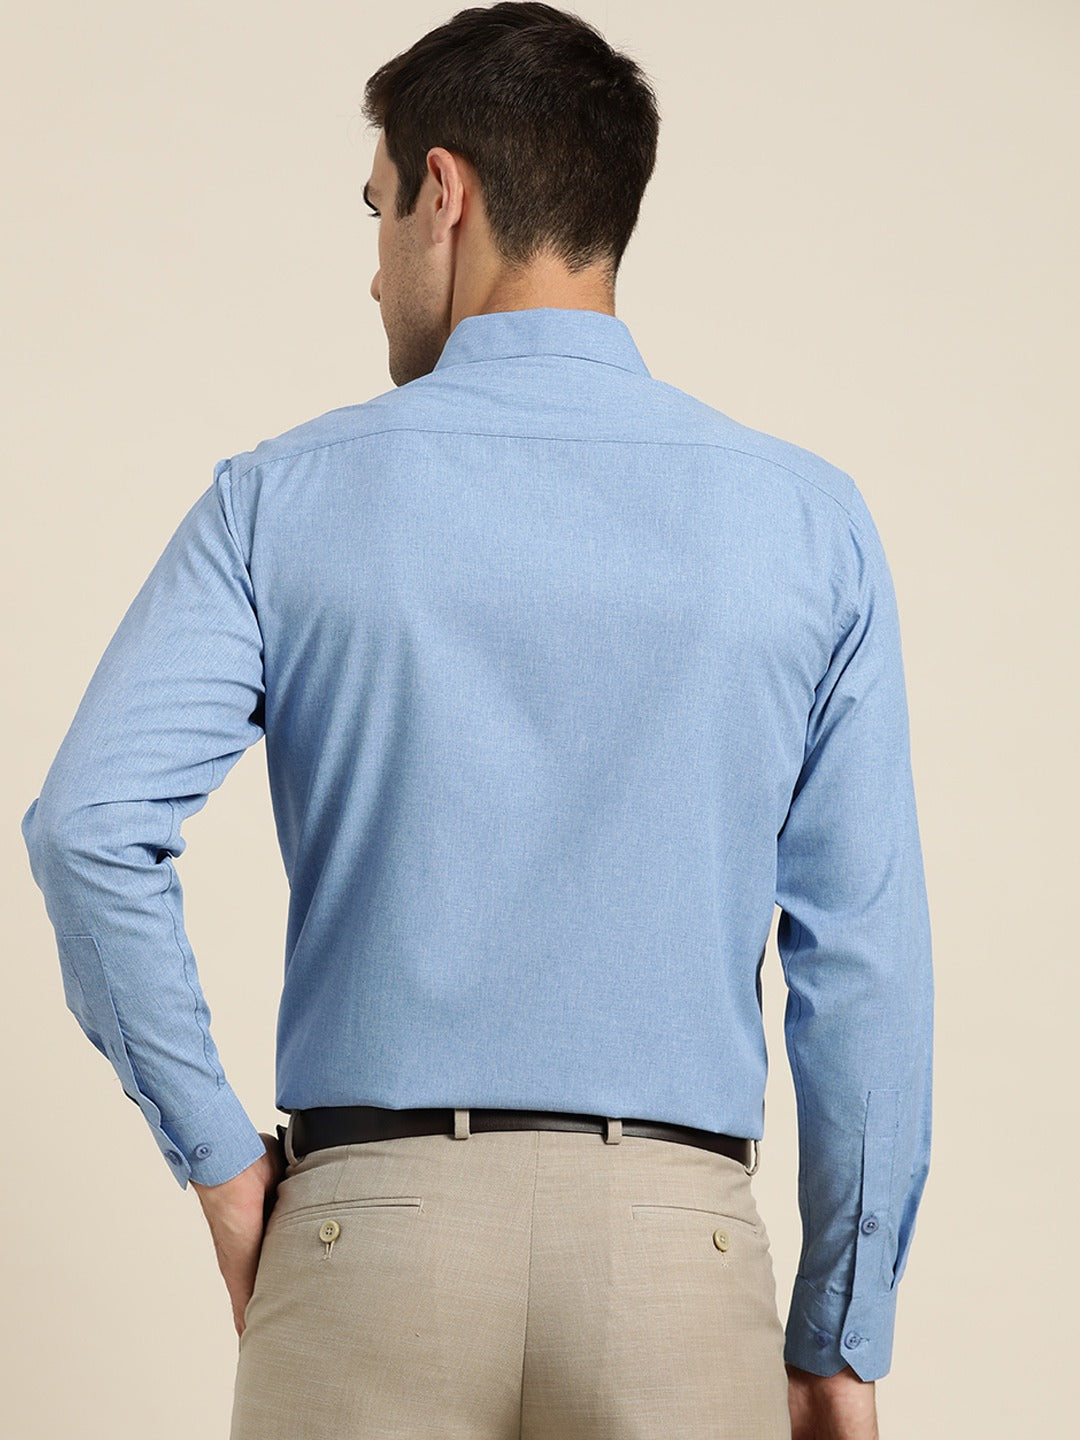 Men's Cotton Blue Casual Shirt